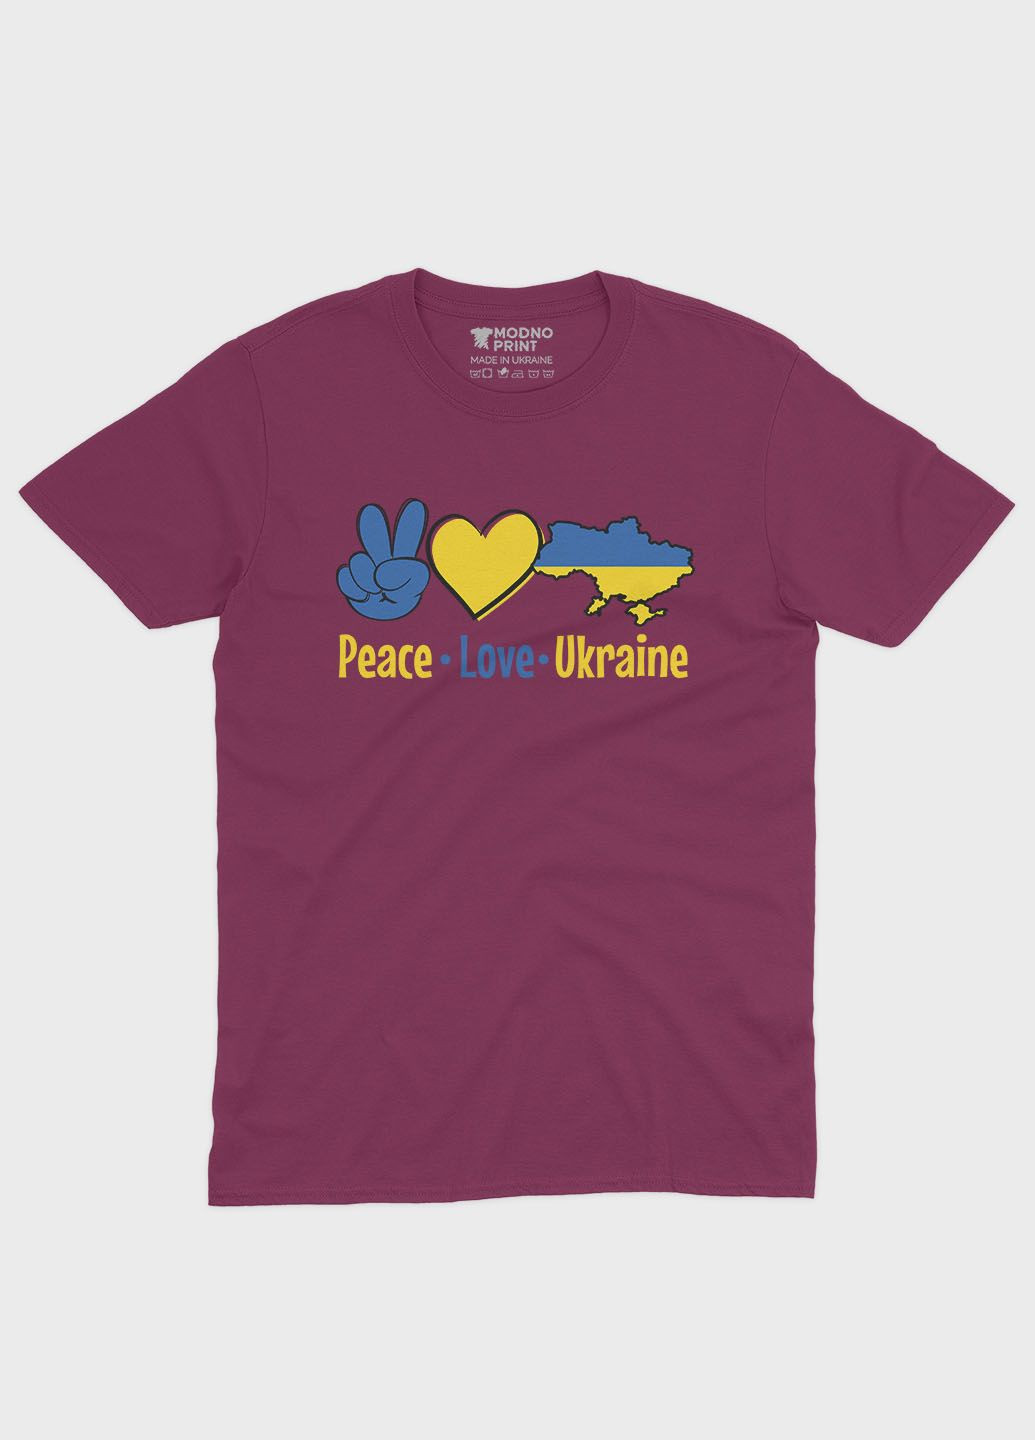 Бордовая мужская футболка с патриотическим принтом peace love ukraine (ts001-2-bgr-005-1-040) Modno